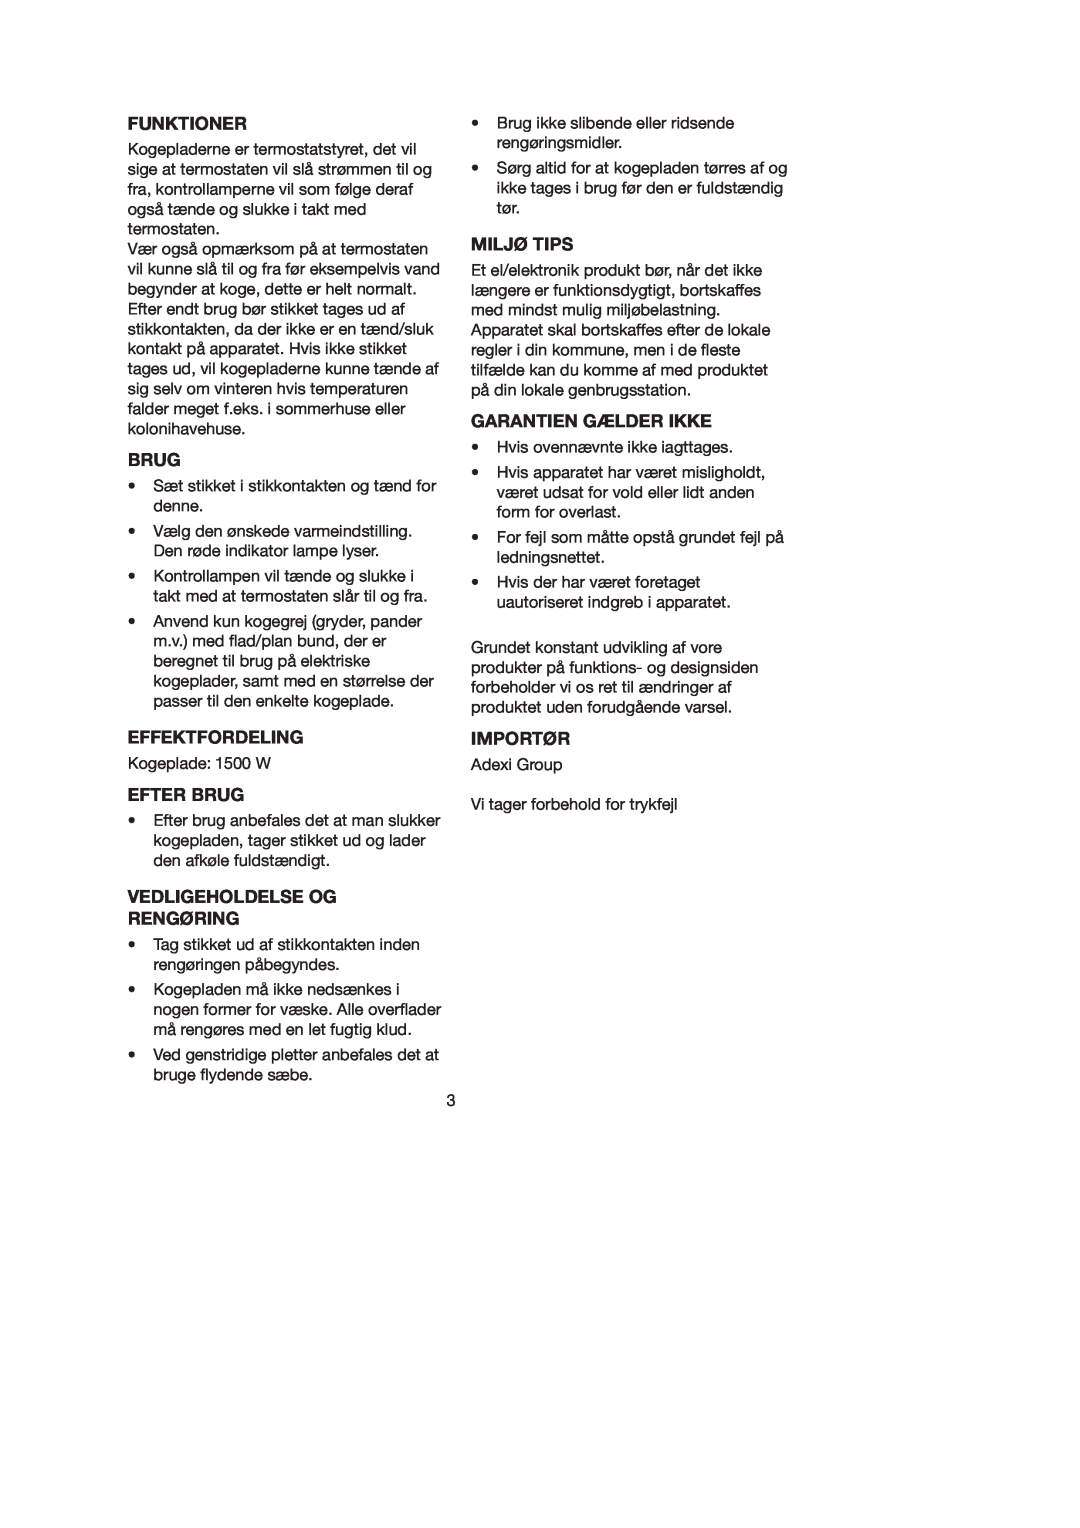 Melissa 750-026 manual Funktioner, Effektfordeling, Efter Brug, Vedligeholdelse Og Rengøring, Miljø Tips, Importør 